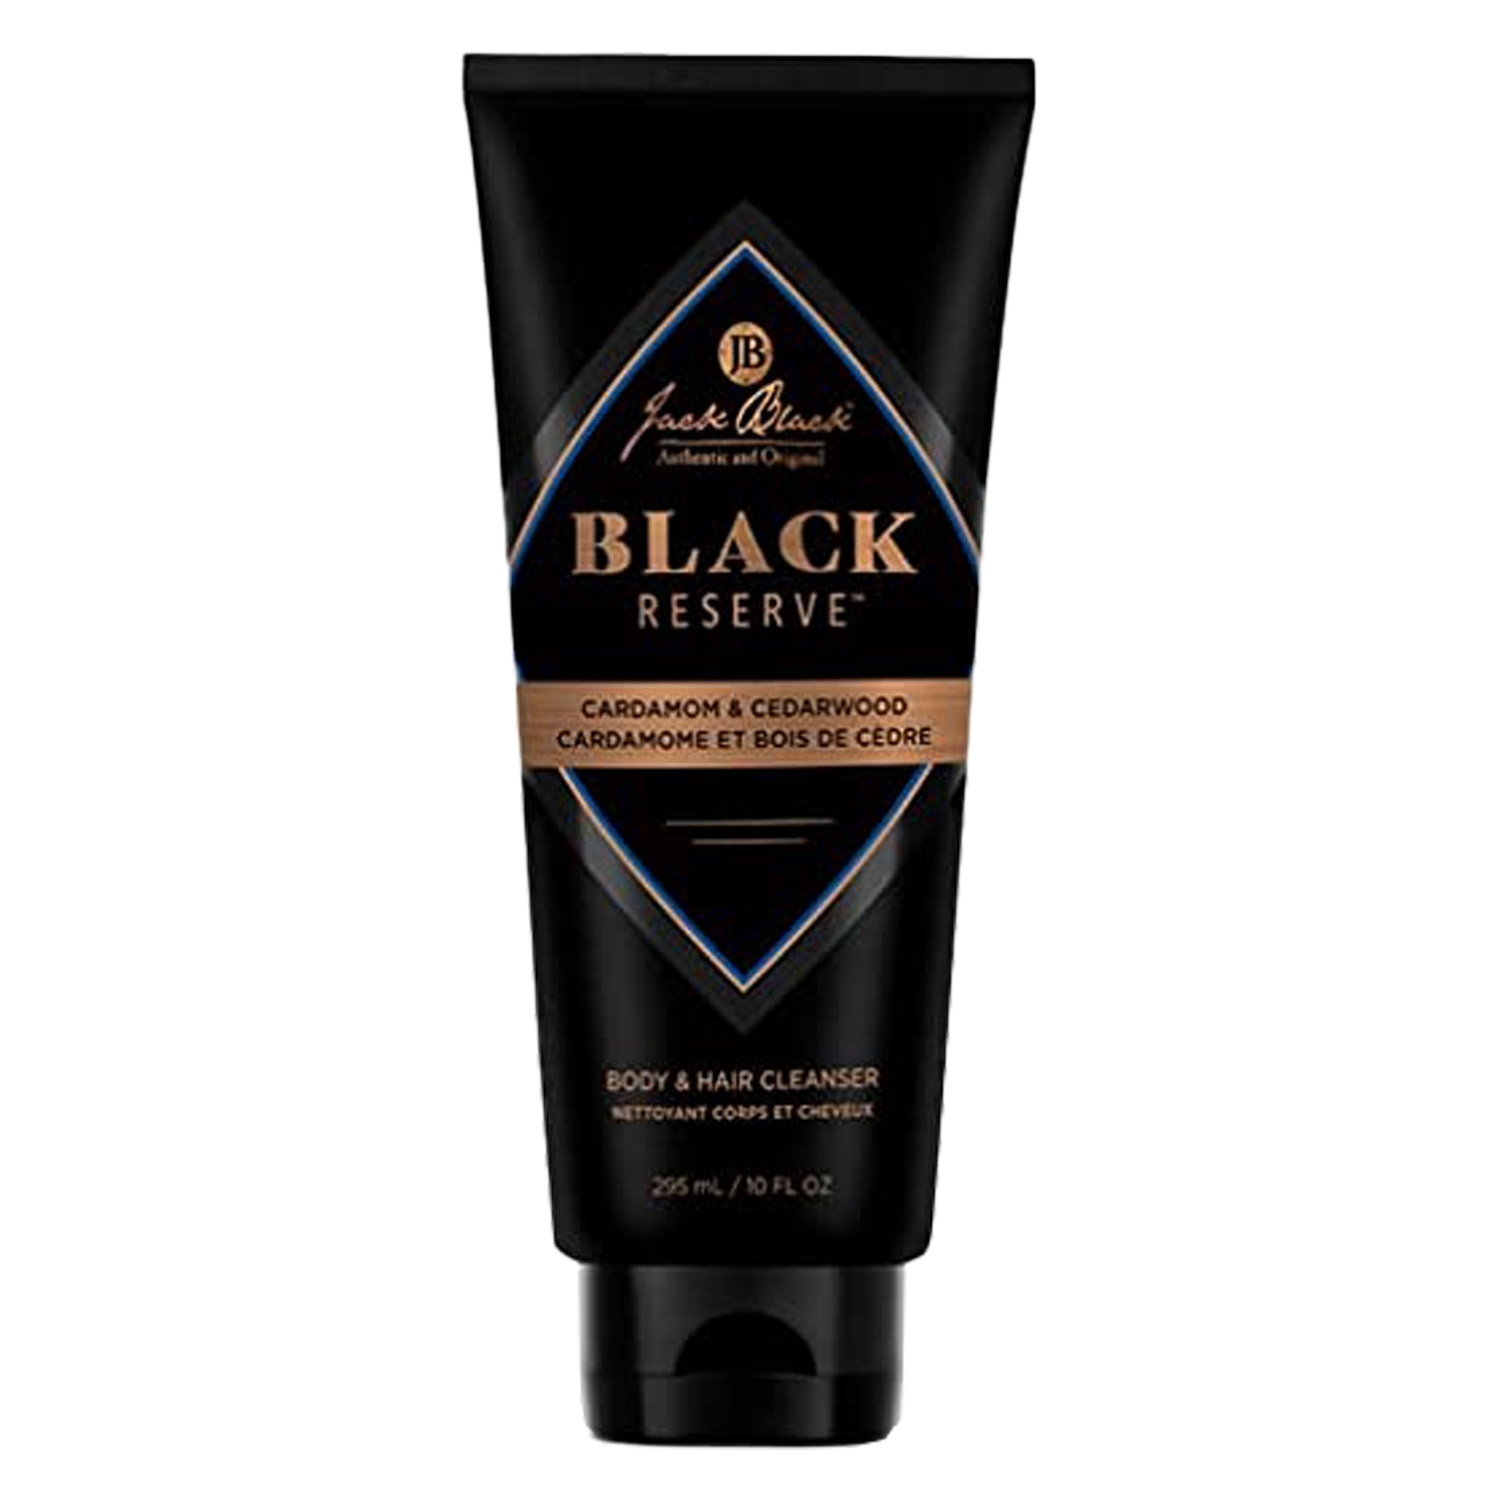 Produktbild von Black Reserve - Body & Hair Cleanser